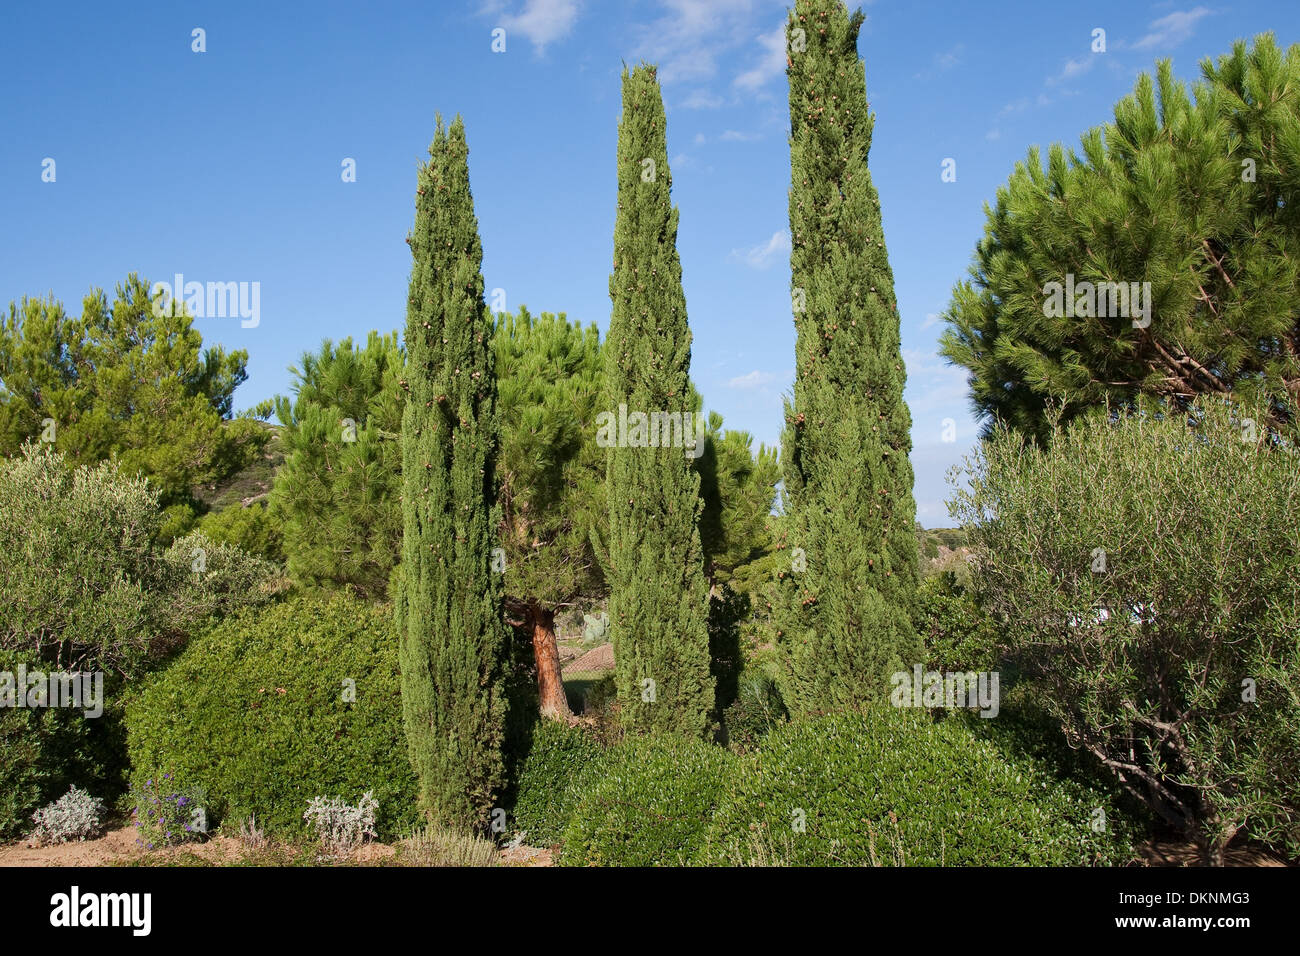 Mediterranean Cypress, Italian Cypress, Tuscan Cypress, Graveyard Cypress, Pencil Pine, Echte Zypresse, Cupressus sempervirens Stock Photo